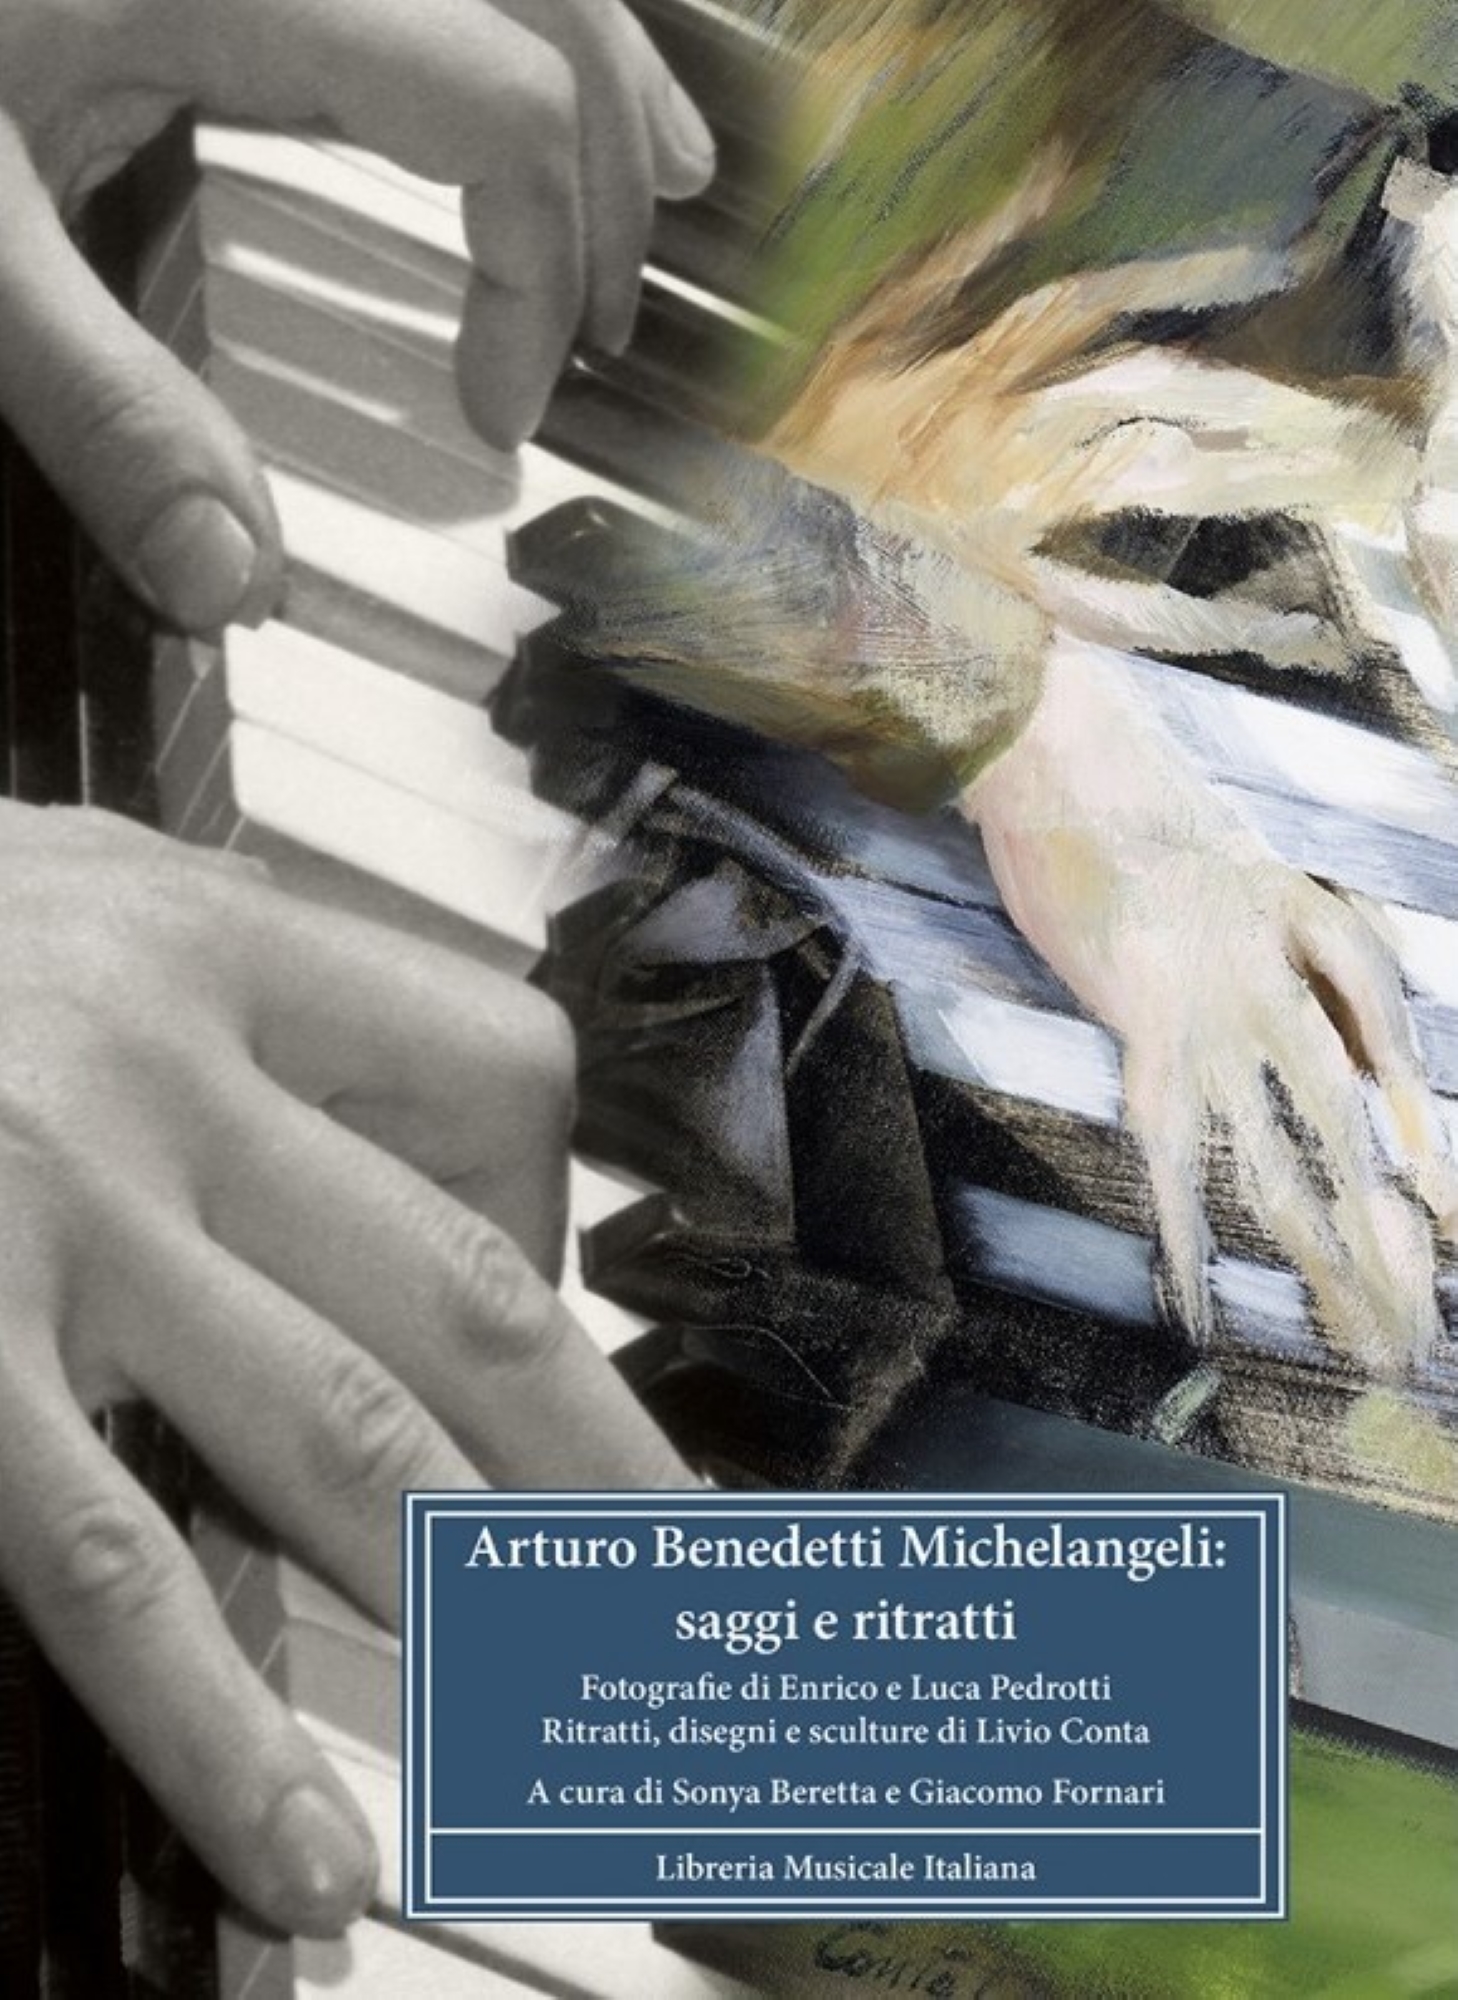 04_Arturo Benedetti Michelangeli -saggi e ritratti